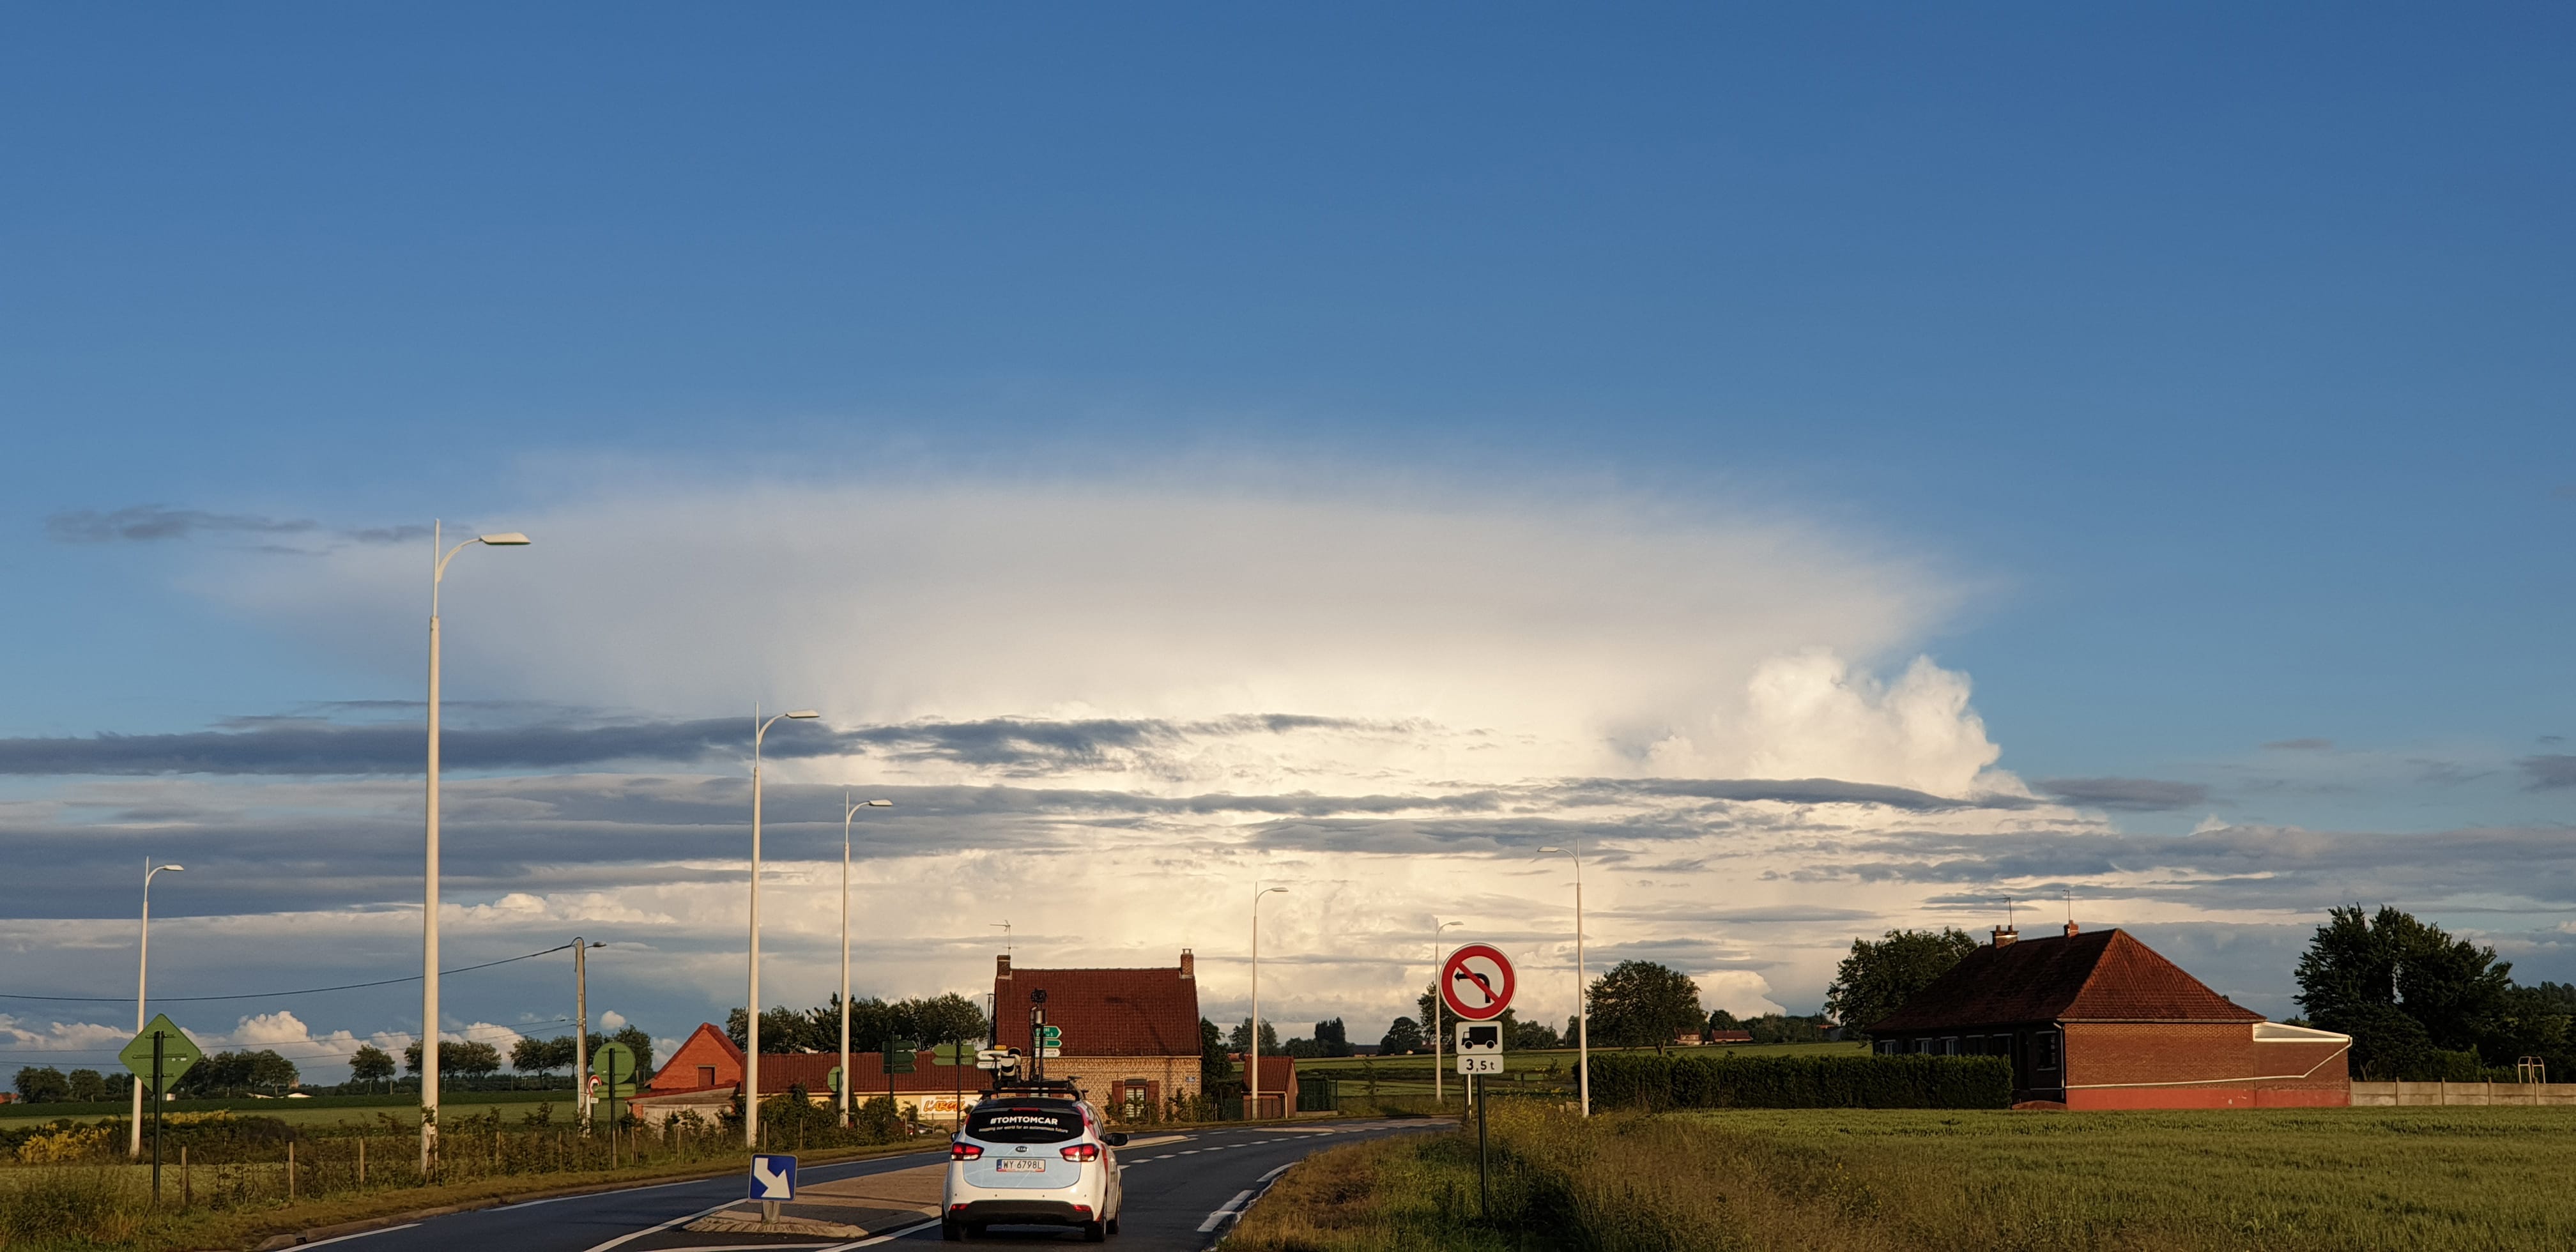 Cumulonimbus photographié hier soir vers 21h. Vu la distance, l'orage devait se situer du côté de l'Avesnois ou de Lille. Photo prise près de Saint-Omer. - 12/06/2019 21:00 - Kévin Dubois